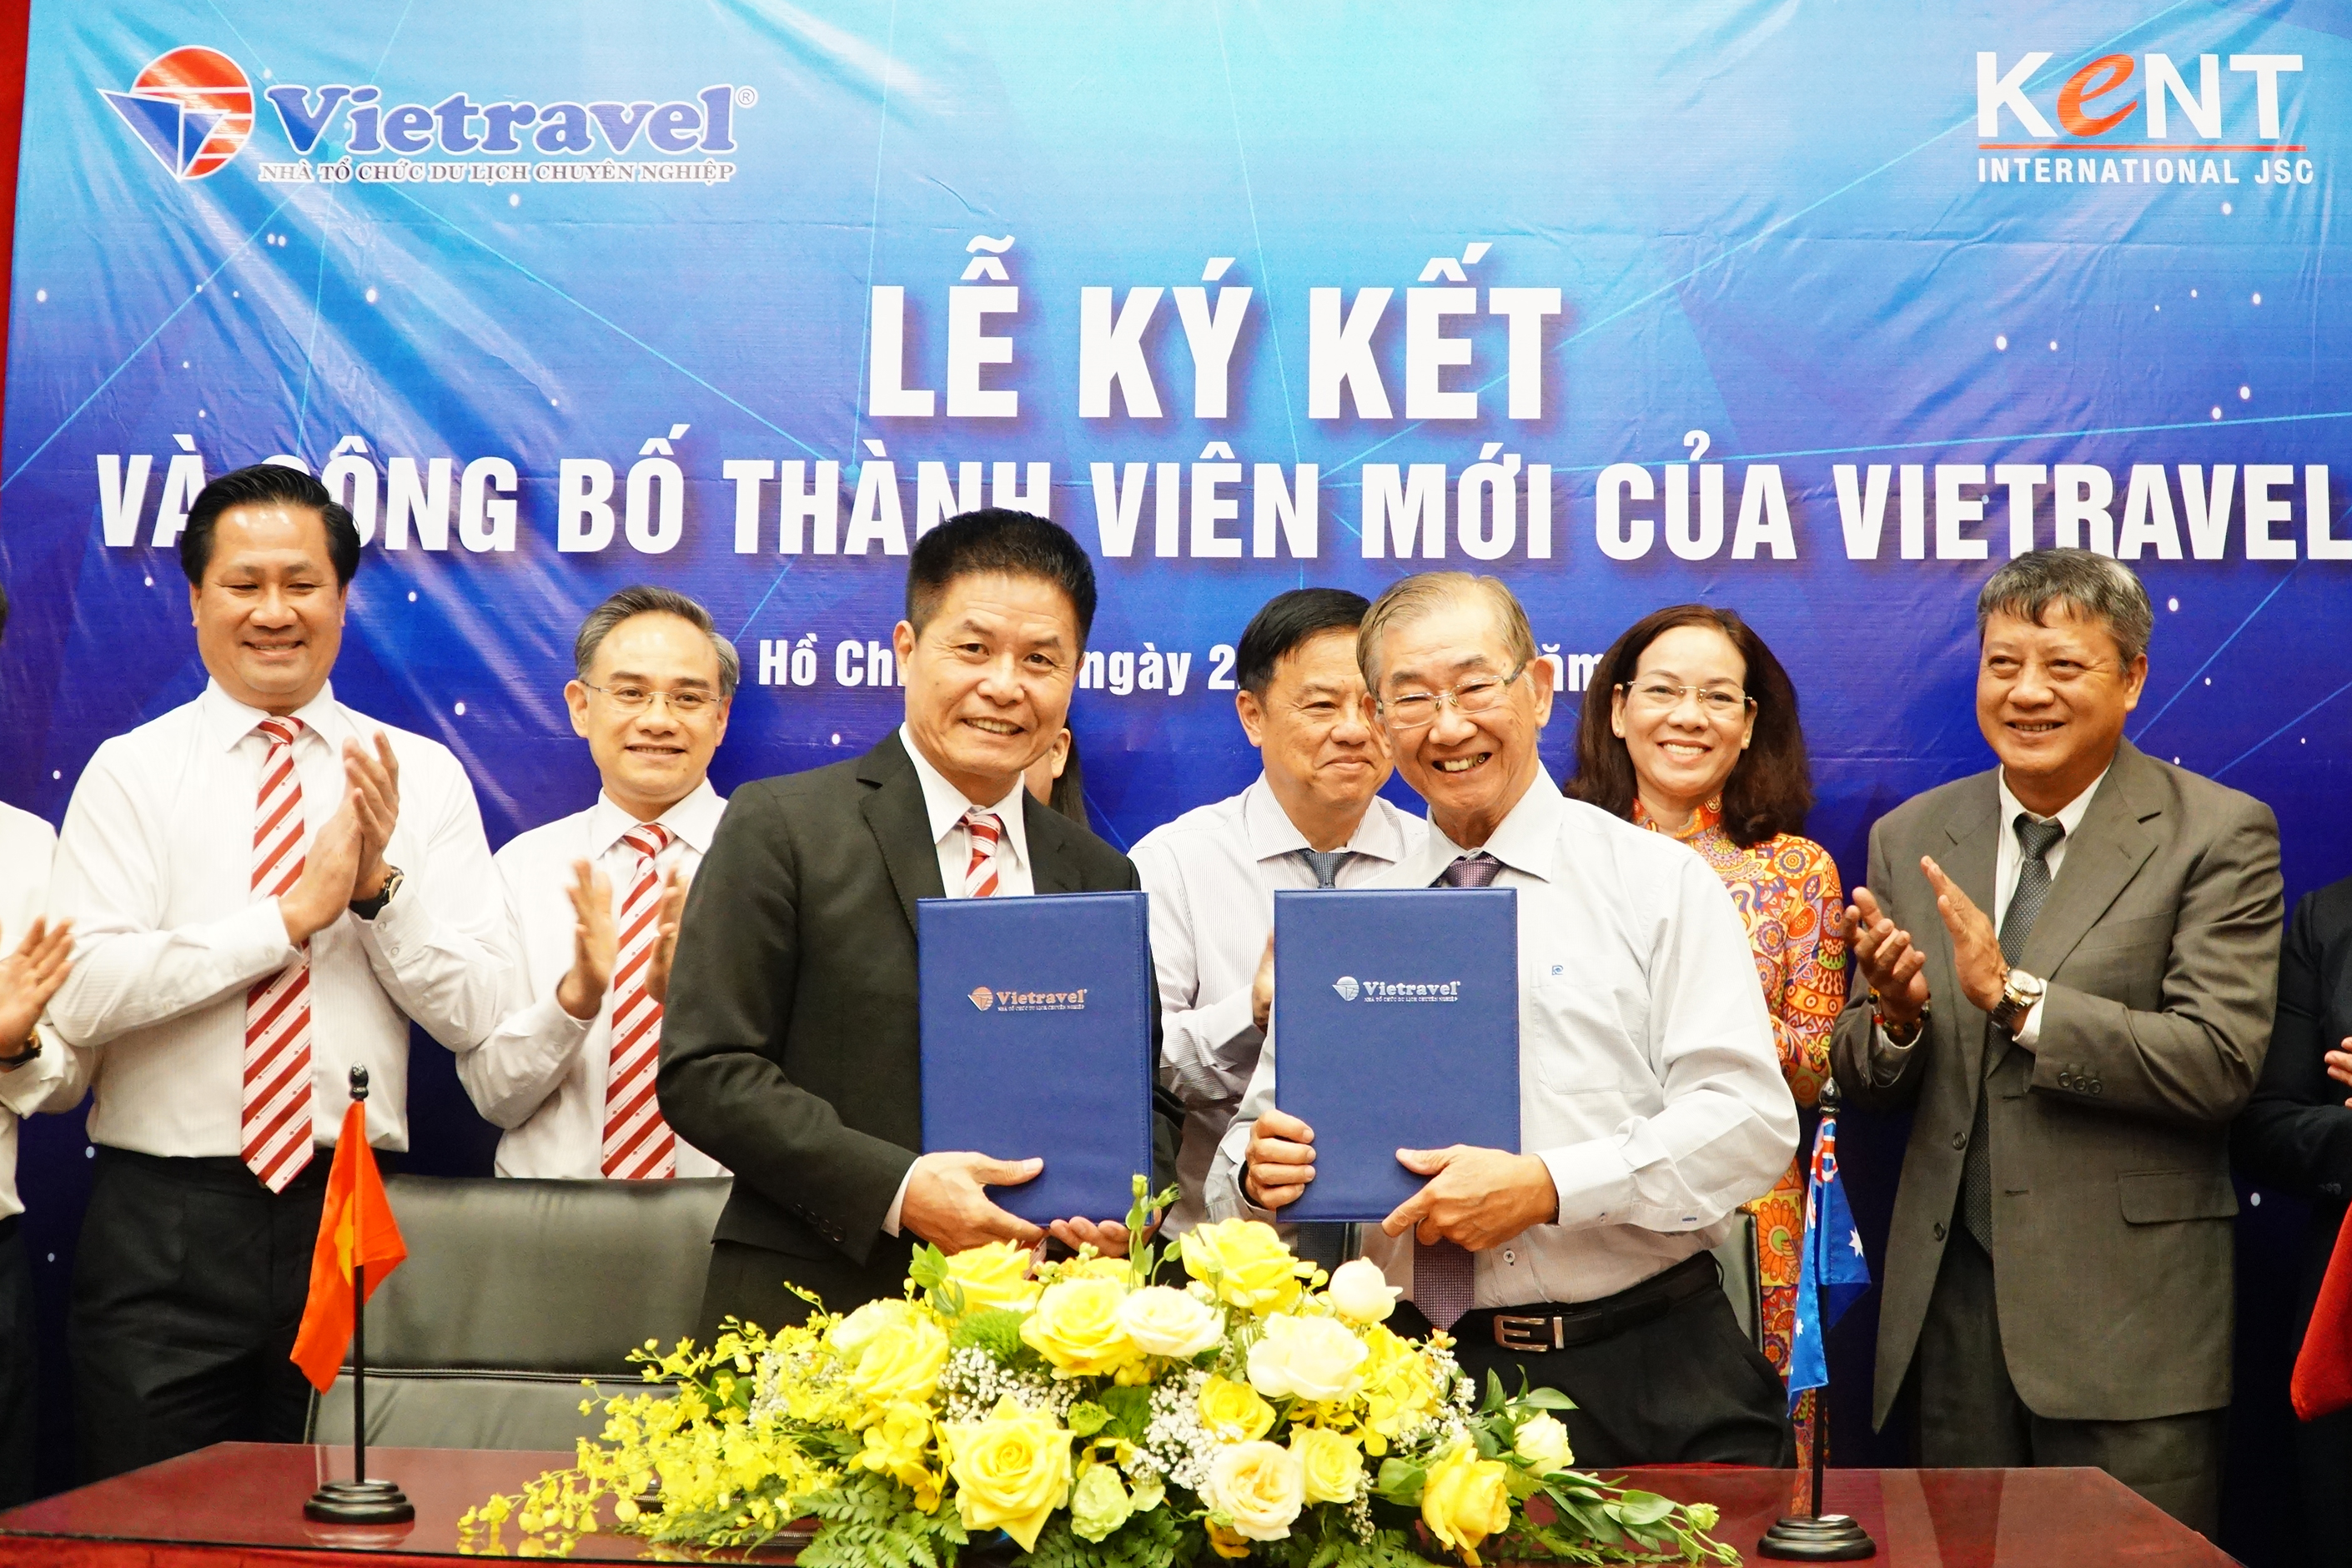 Lễ kí kết hợp đồng và công bố thành viên mới của  Vietravel